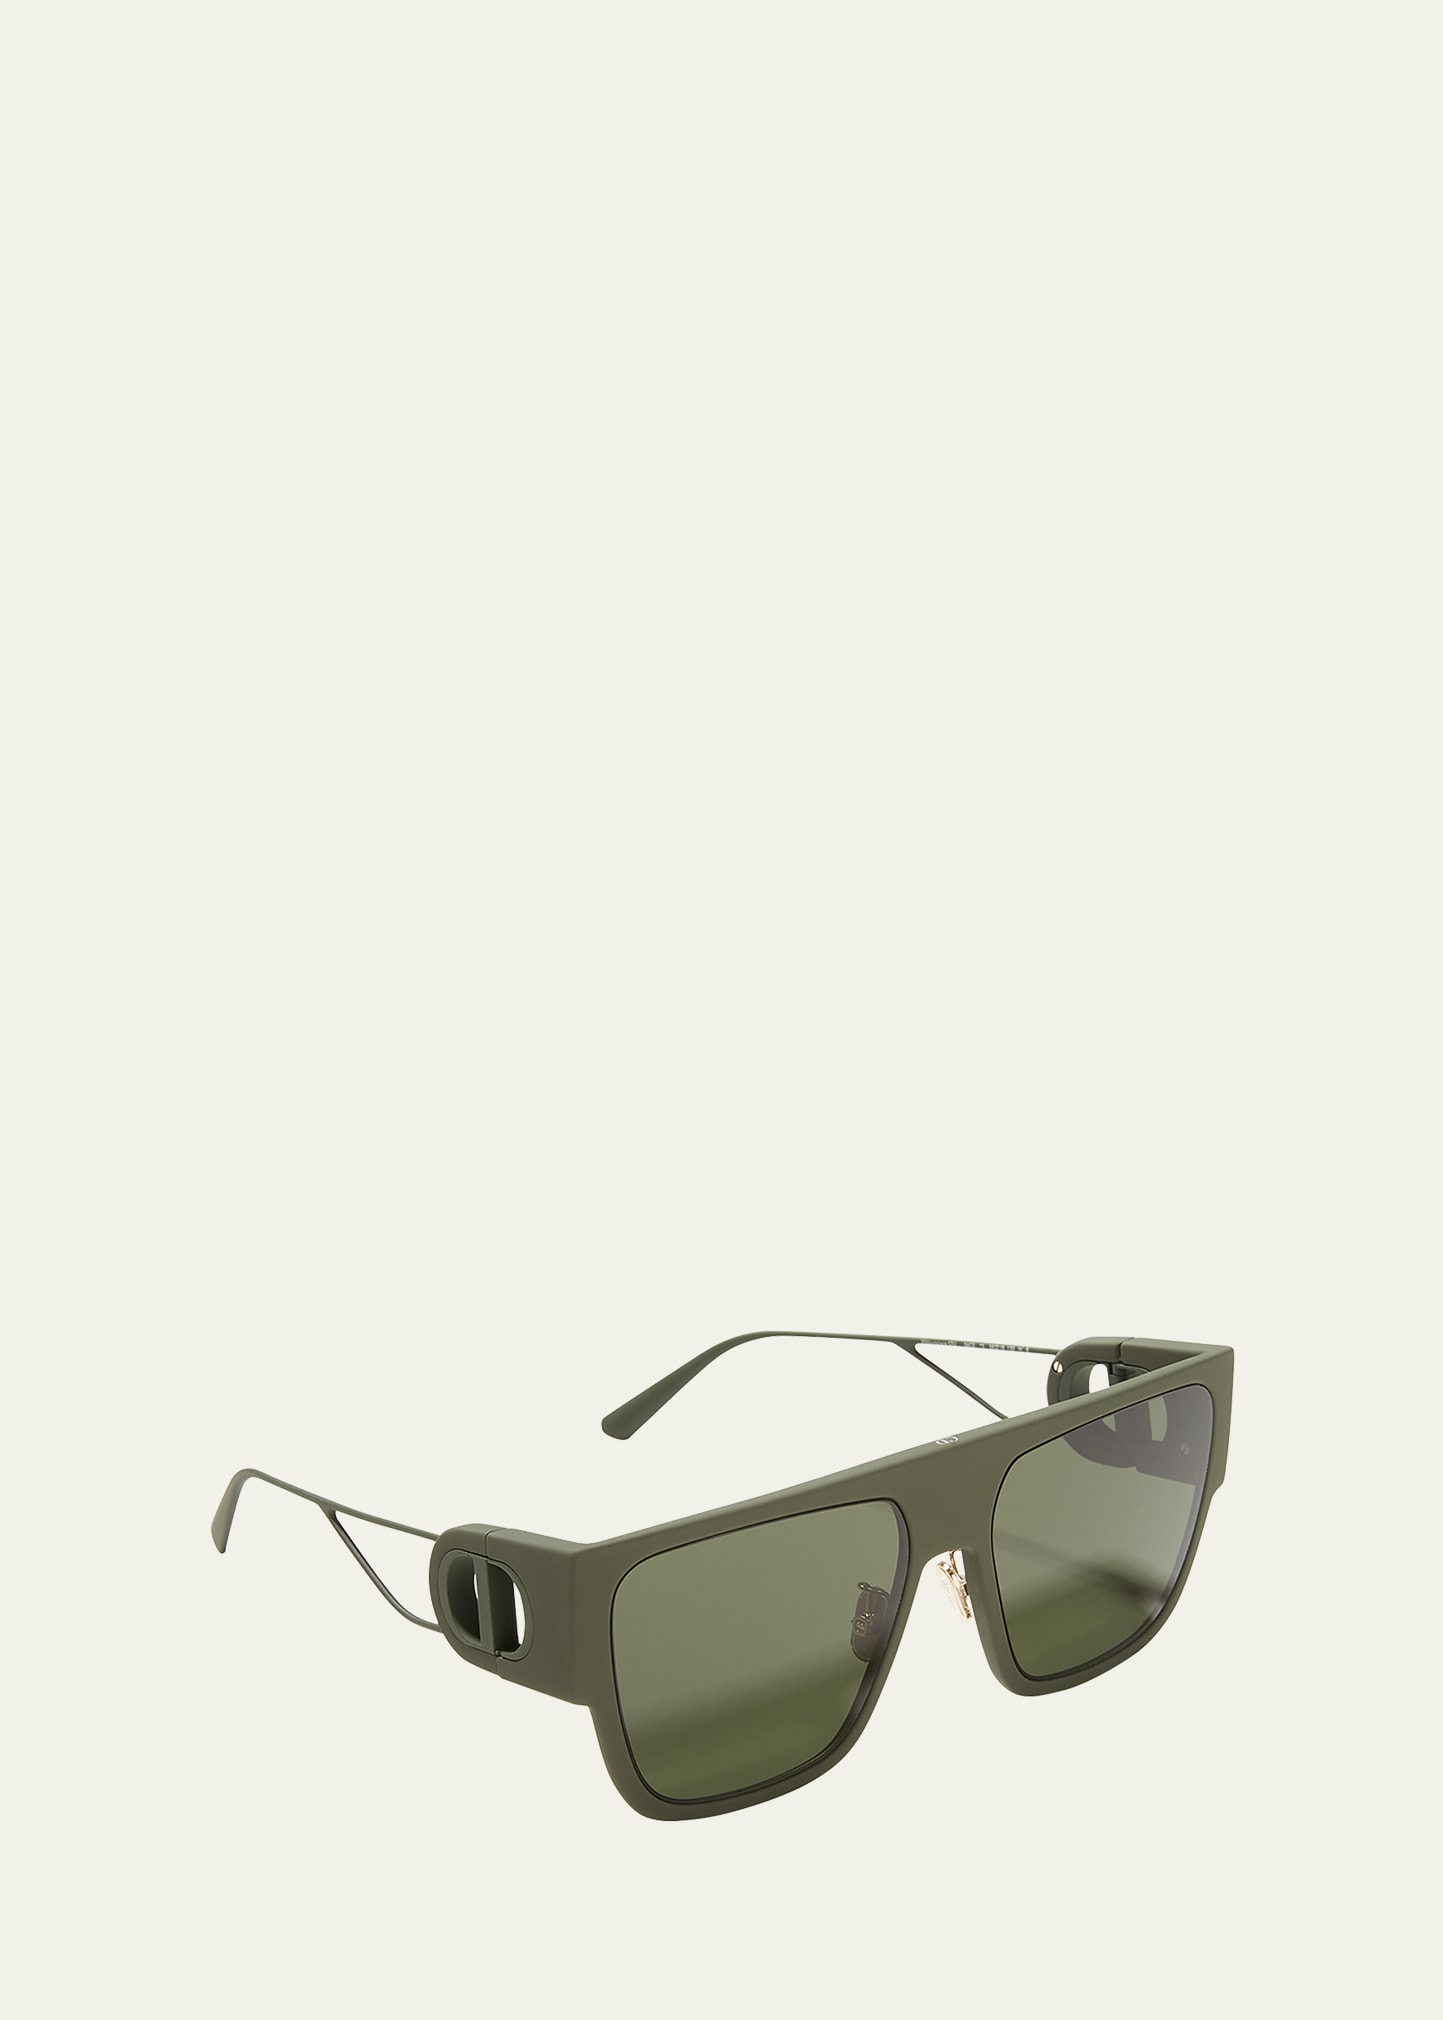 Dior 30Montaigne S3U 58mm Injection Plastic Semi-Shield Sunglasses